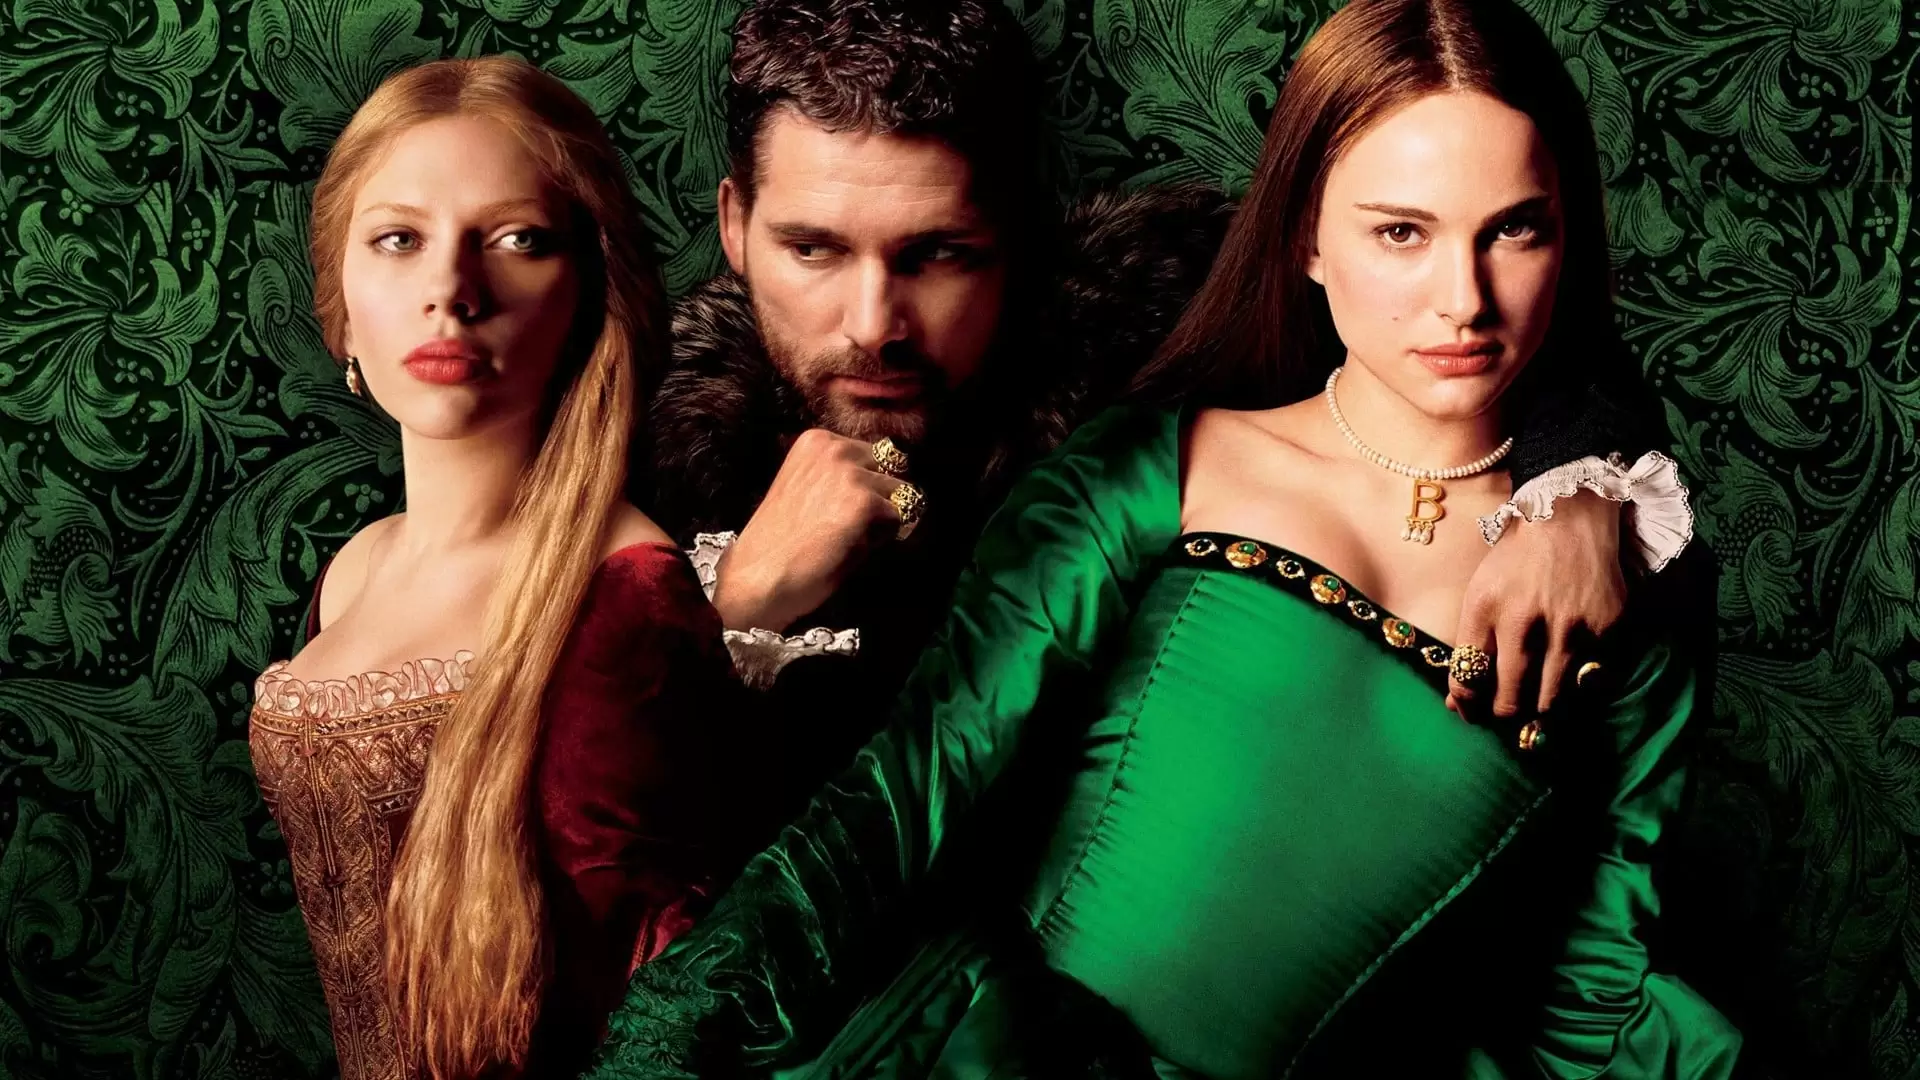 دانلود فیلم The Other Boleyn Girl 2008 (دختر دیگر بولین) با زیرنویس فارسی و تماشای آنلاین